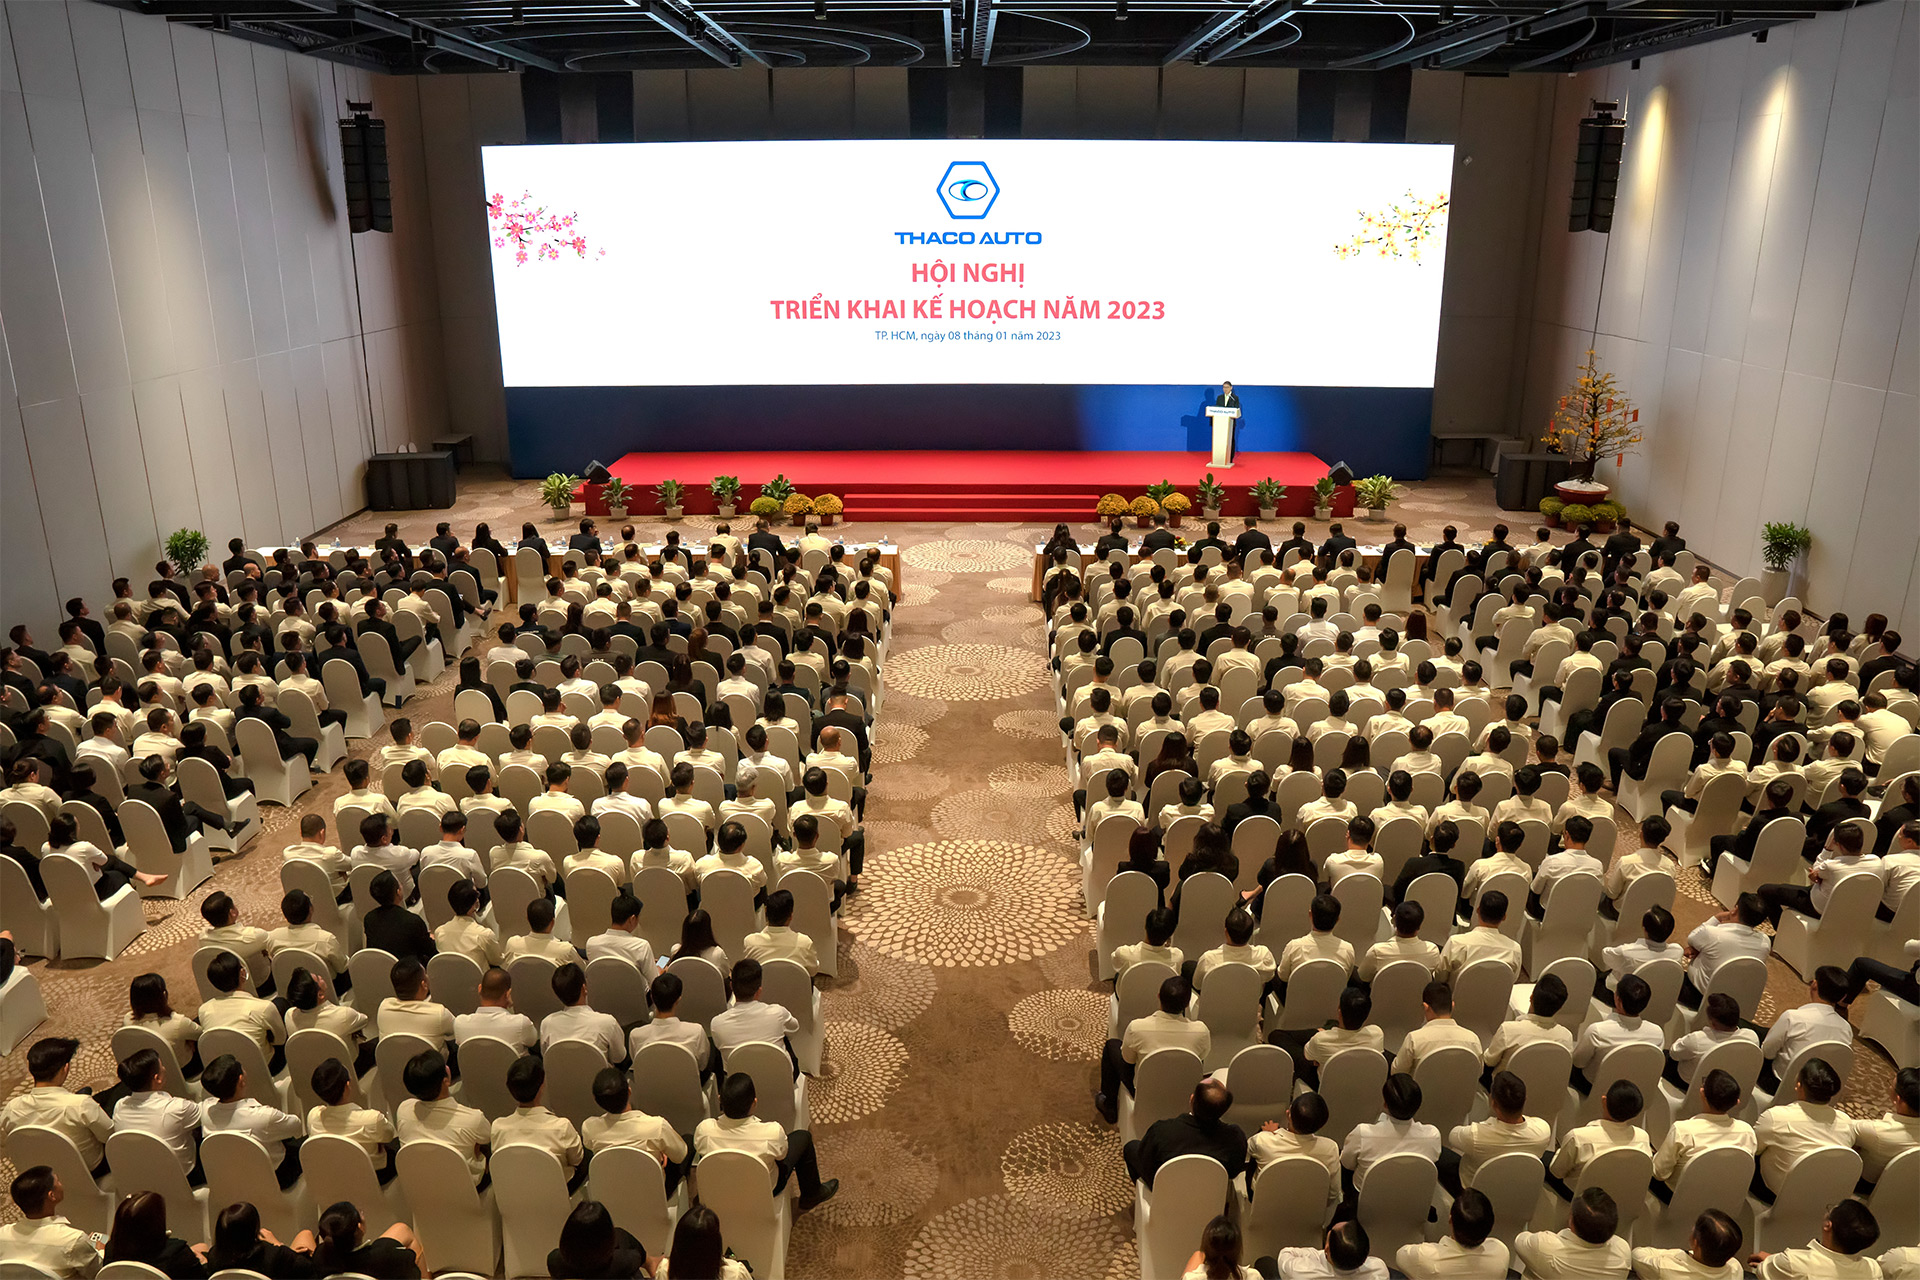 Chủ tịch THACO Trần Bá Dương: Năm 2023 tập trung nâng cấp quản trị và đề cao vai trò, trách nhiệm của người đứng đầu